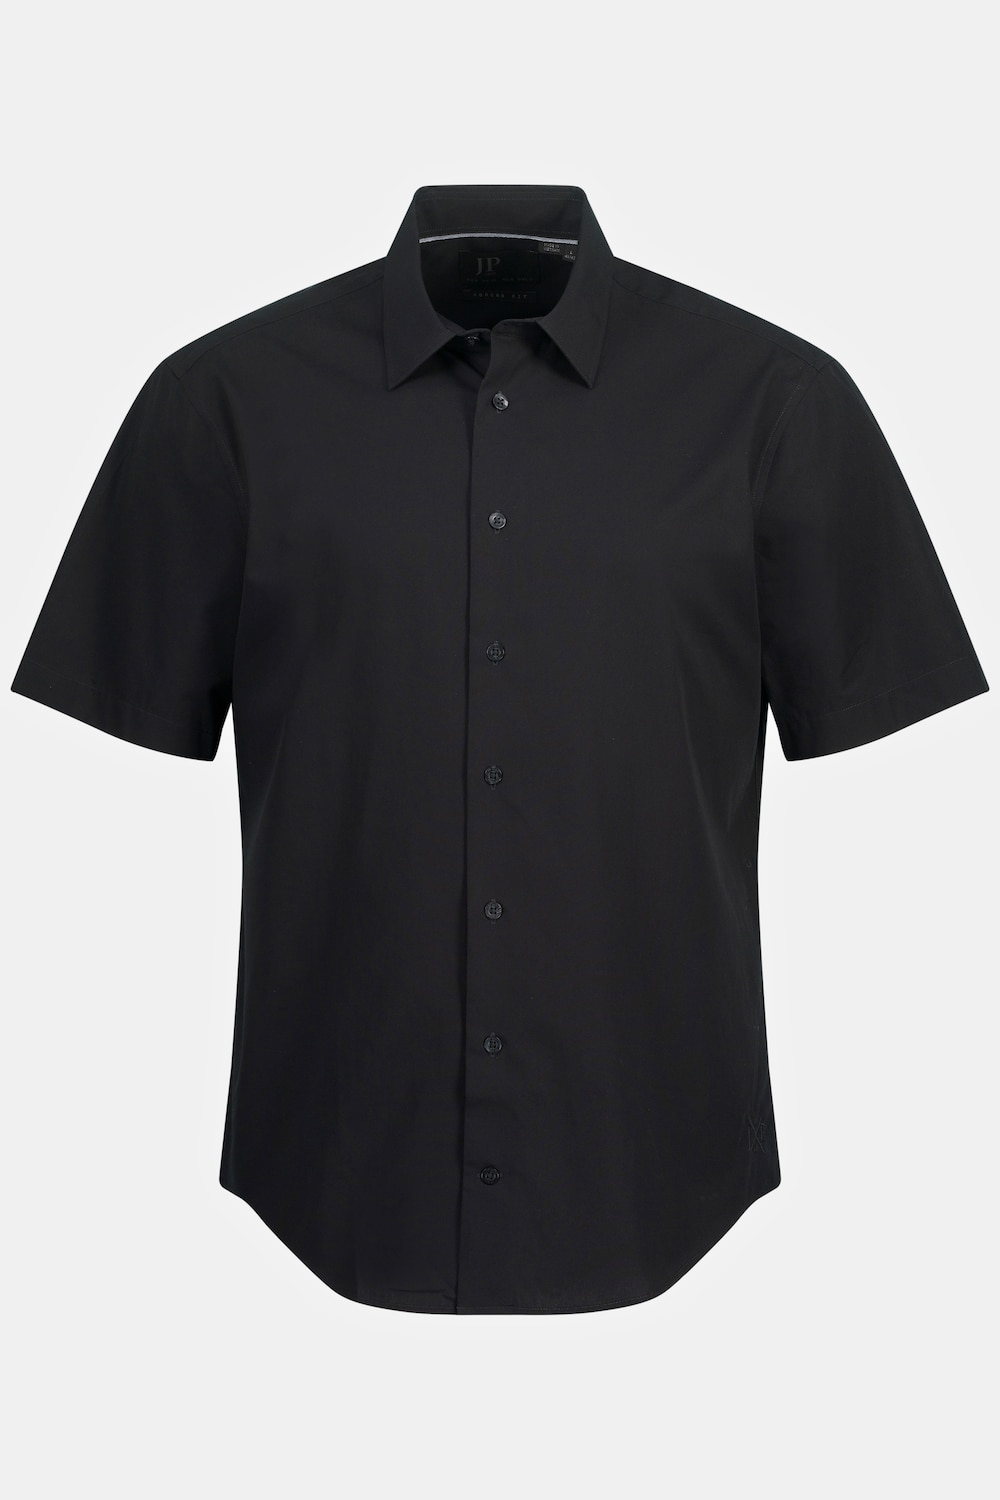 Grote Maten Zakelijk overhemd, Heren, zwart, Maat: 5XL, Katoen, JP1880